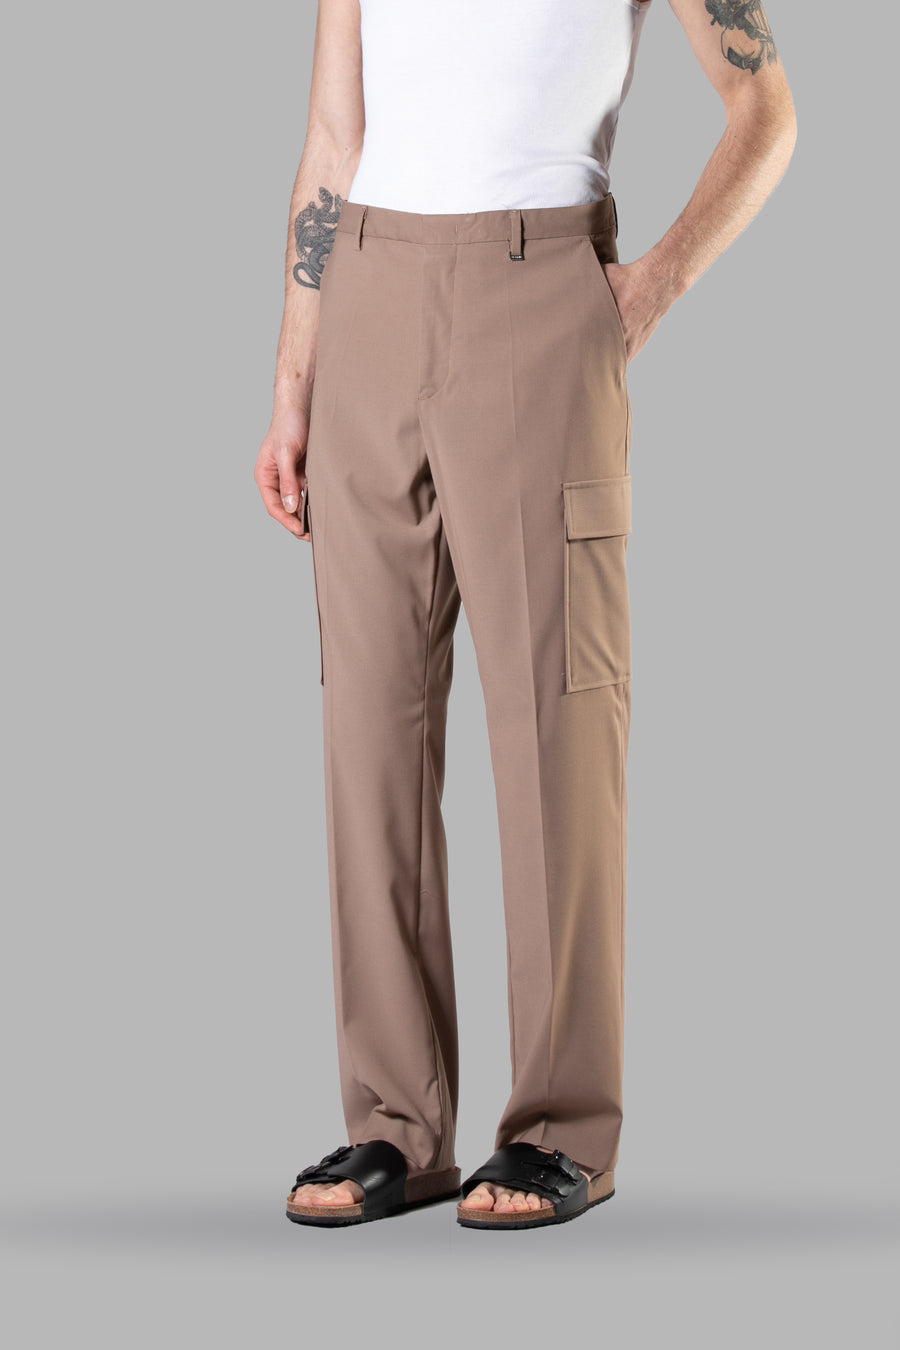 Pantalone fondo ampio con tasconi applicati - Beige